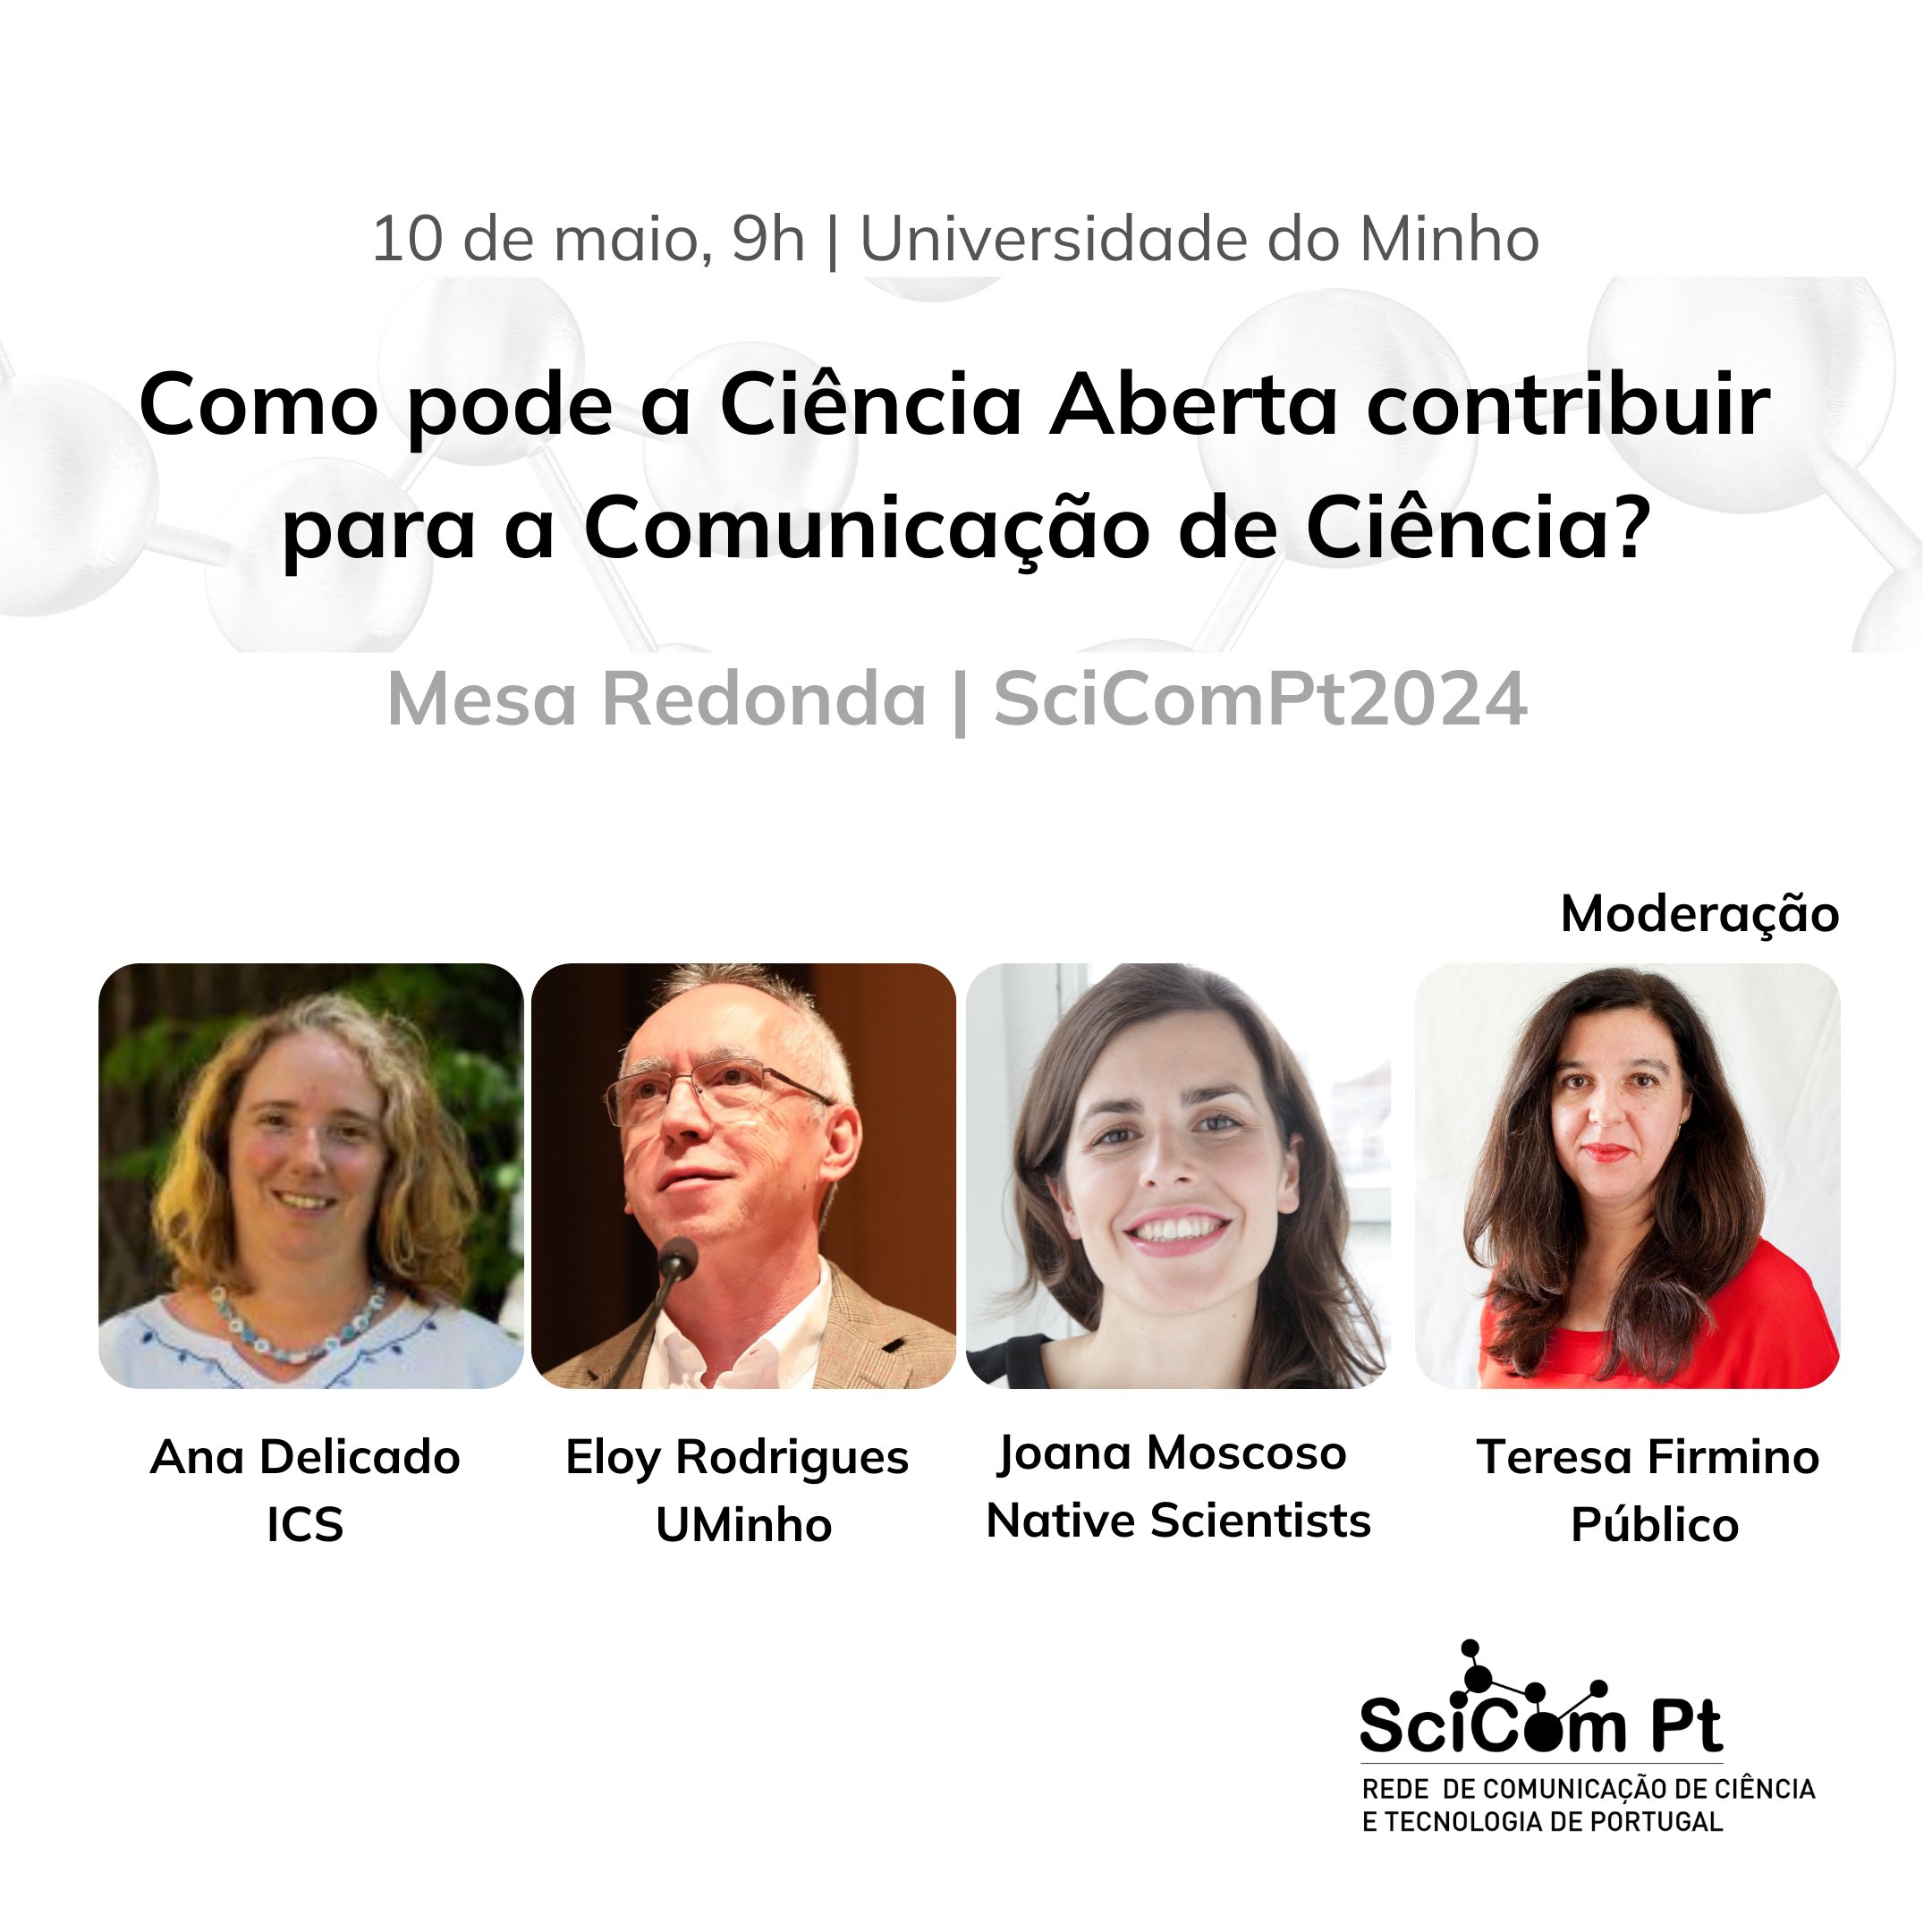 3ª sessão plenária - Ana Delicado, Eloy Rodrigues, Joana Moscoso e Teresa Firmino